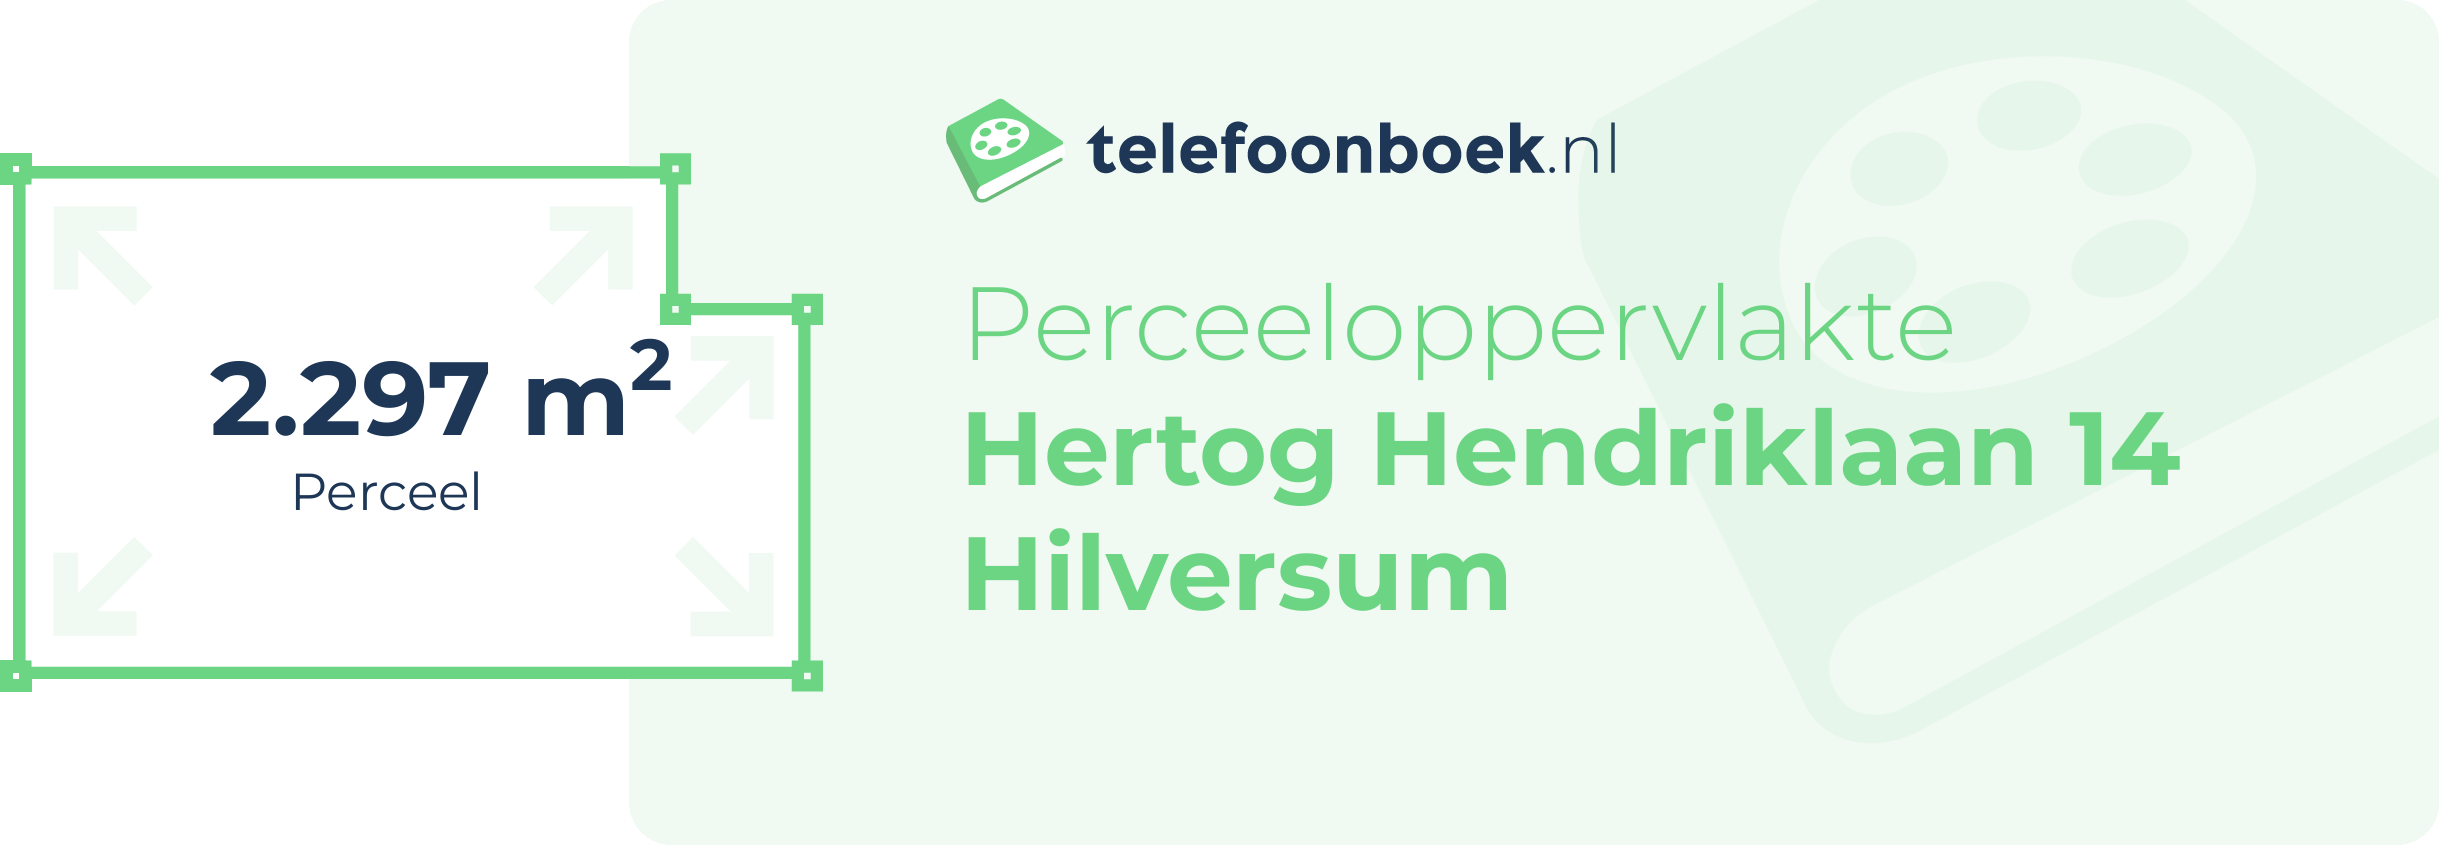 Perceeloppervlakte Hertog Hendriklaan 14 Hilversum